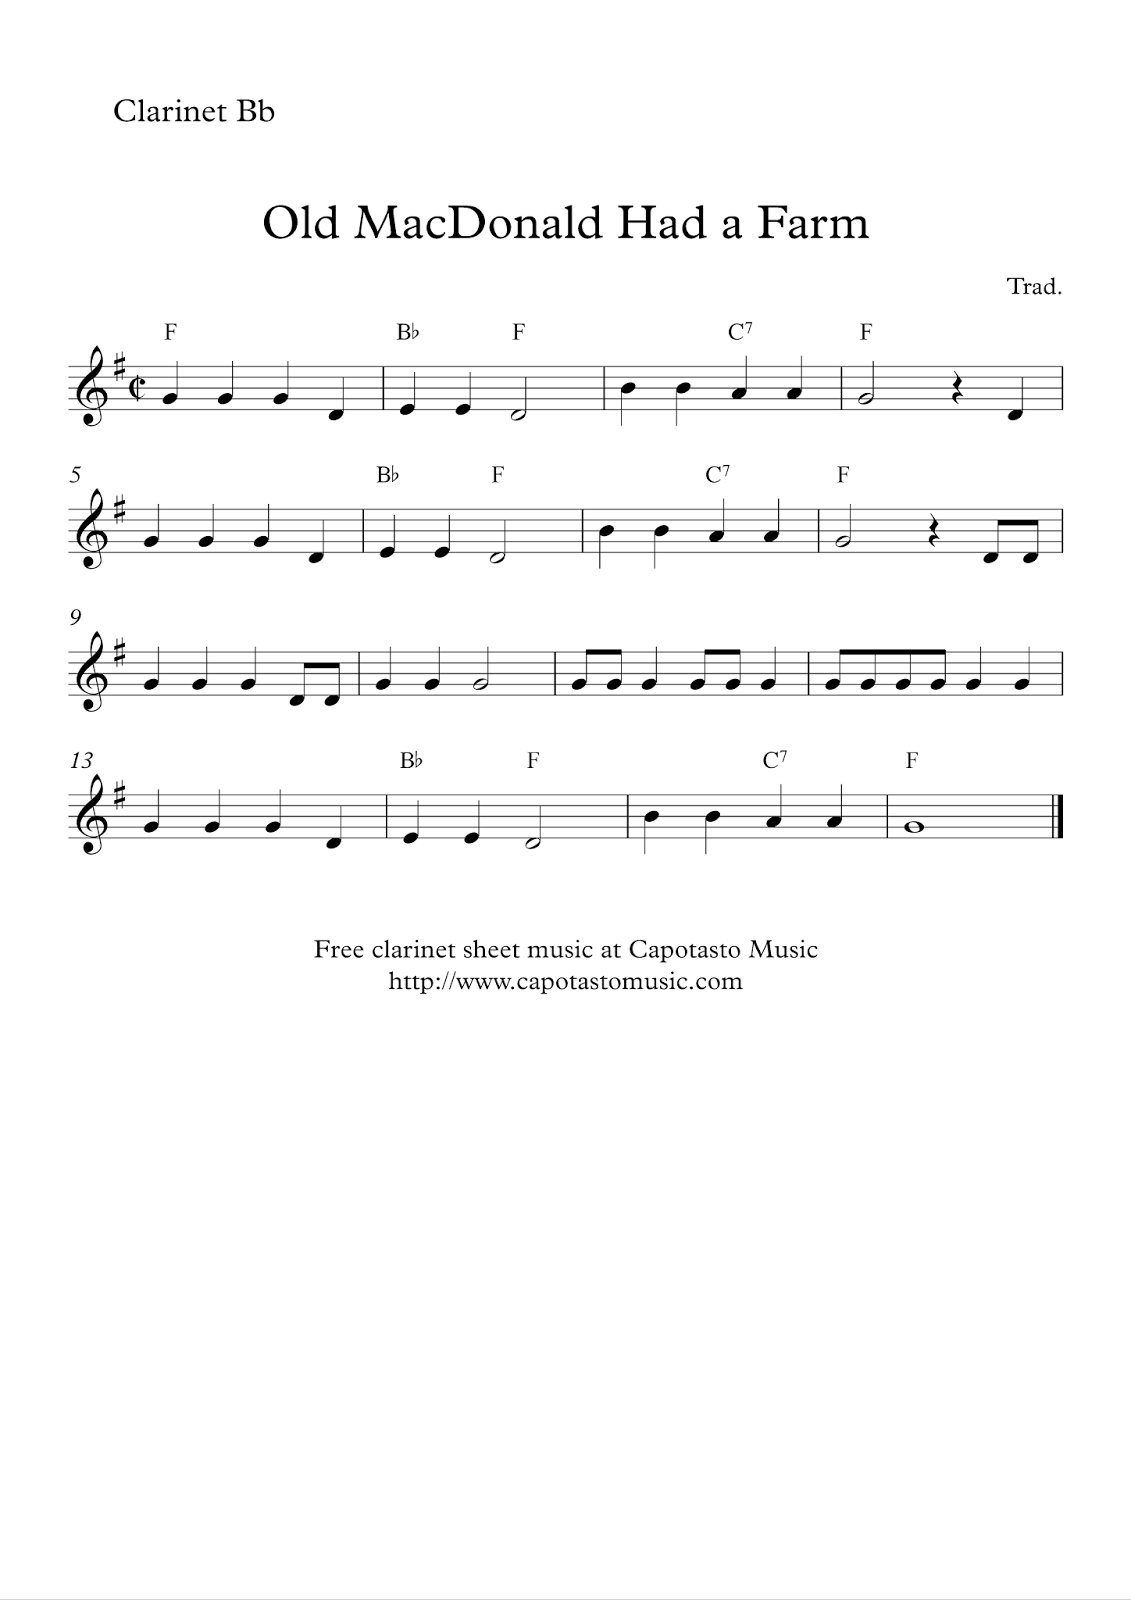 Easy Sheet Music For Beginners: Free Easy Clarinet Sheet Music in Free Printable Clarinet Music